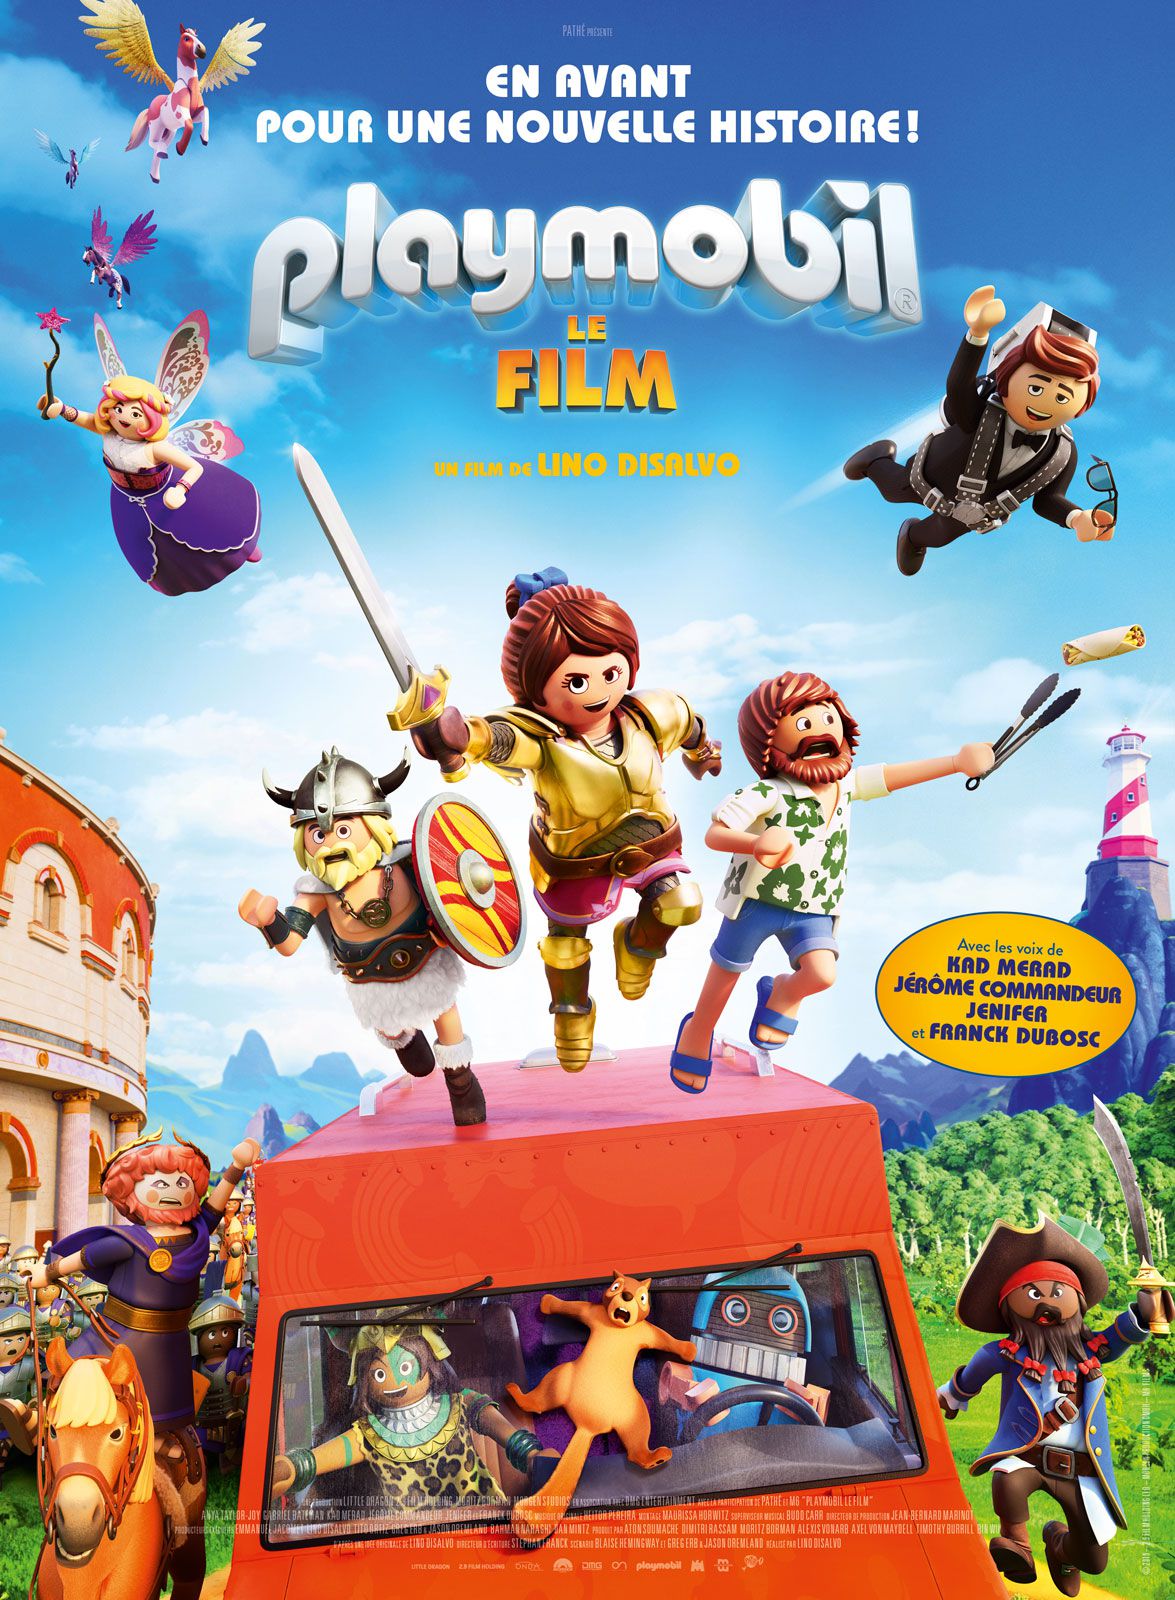 Playmobil, le film - Long-métrage d'animation (2019) streaming VF gratuit complet